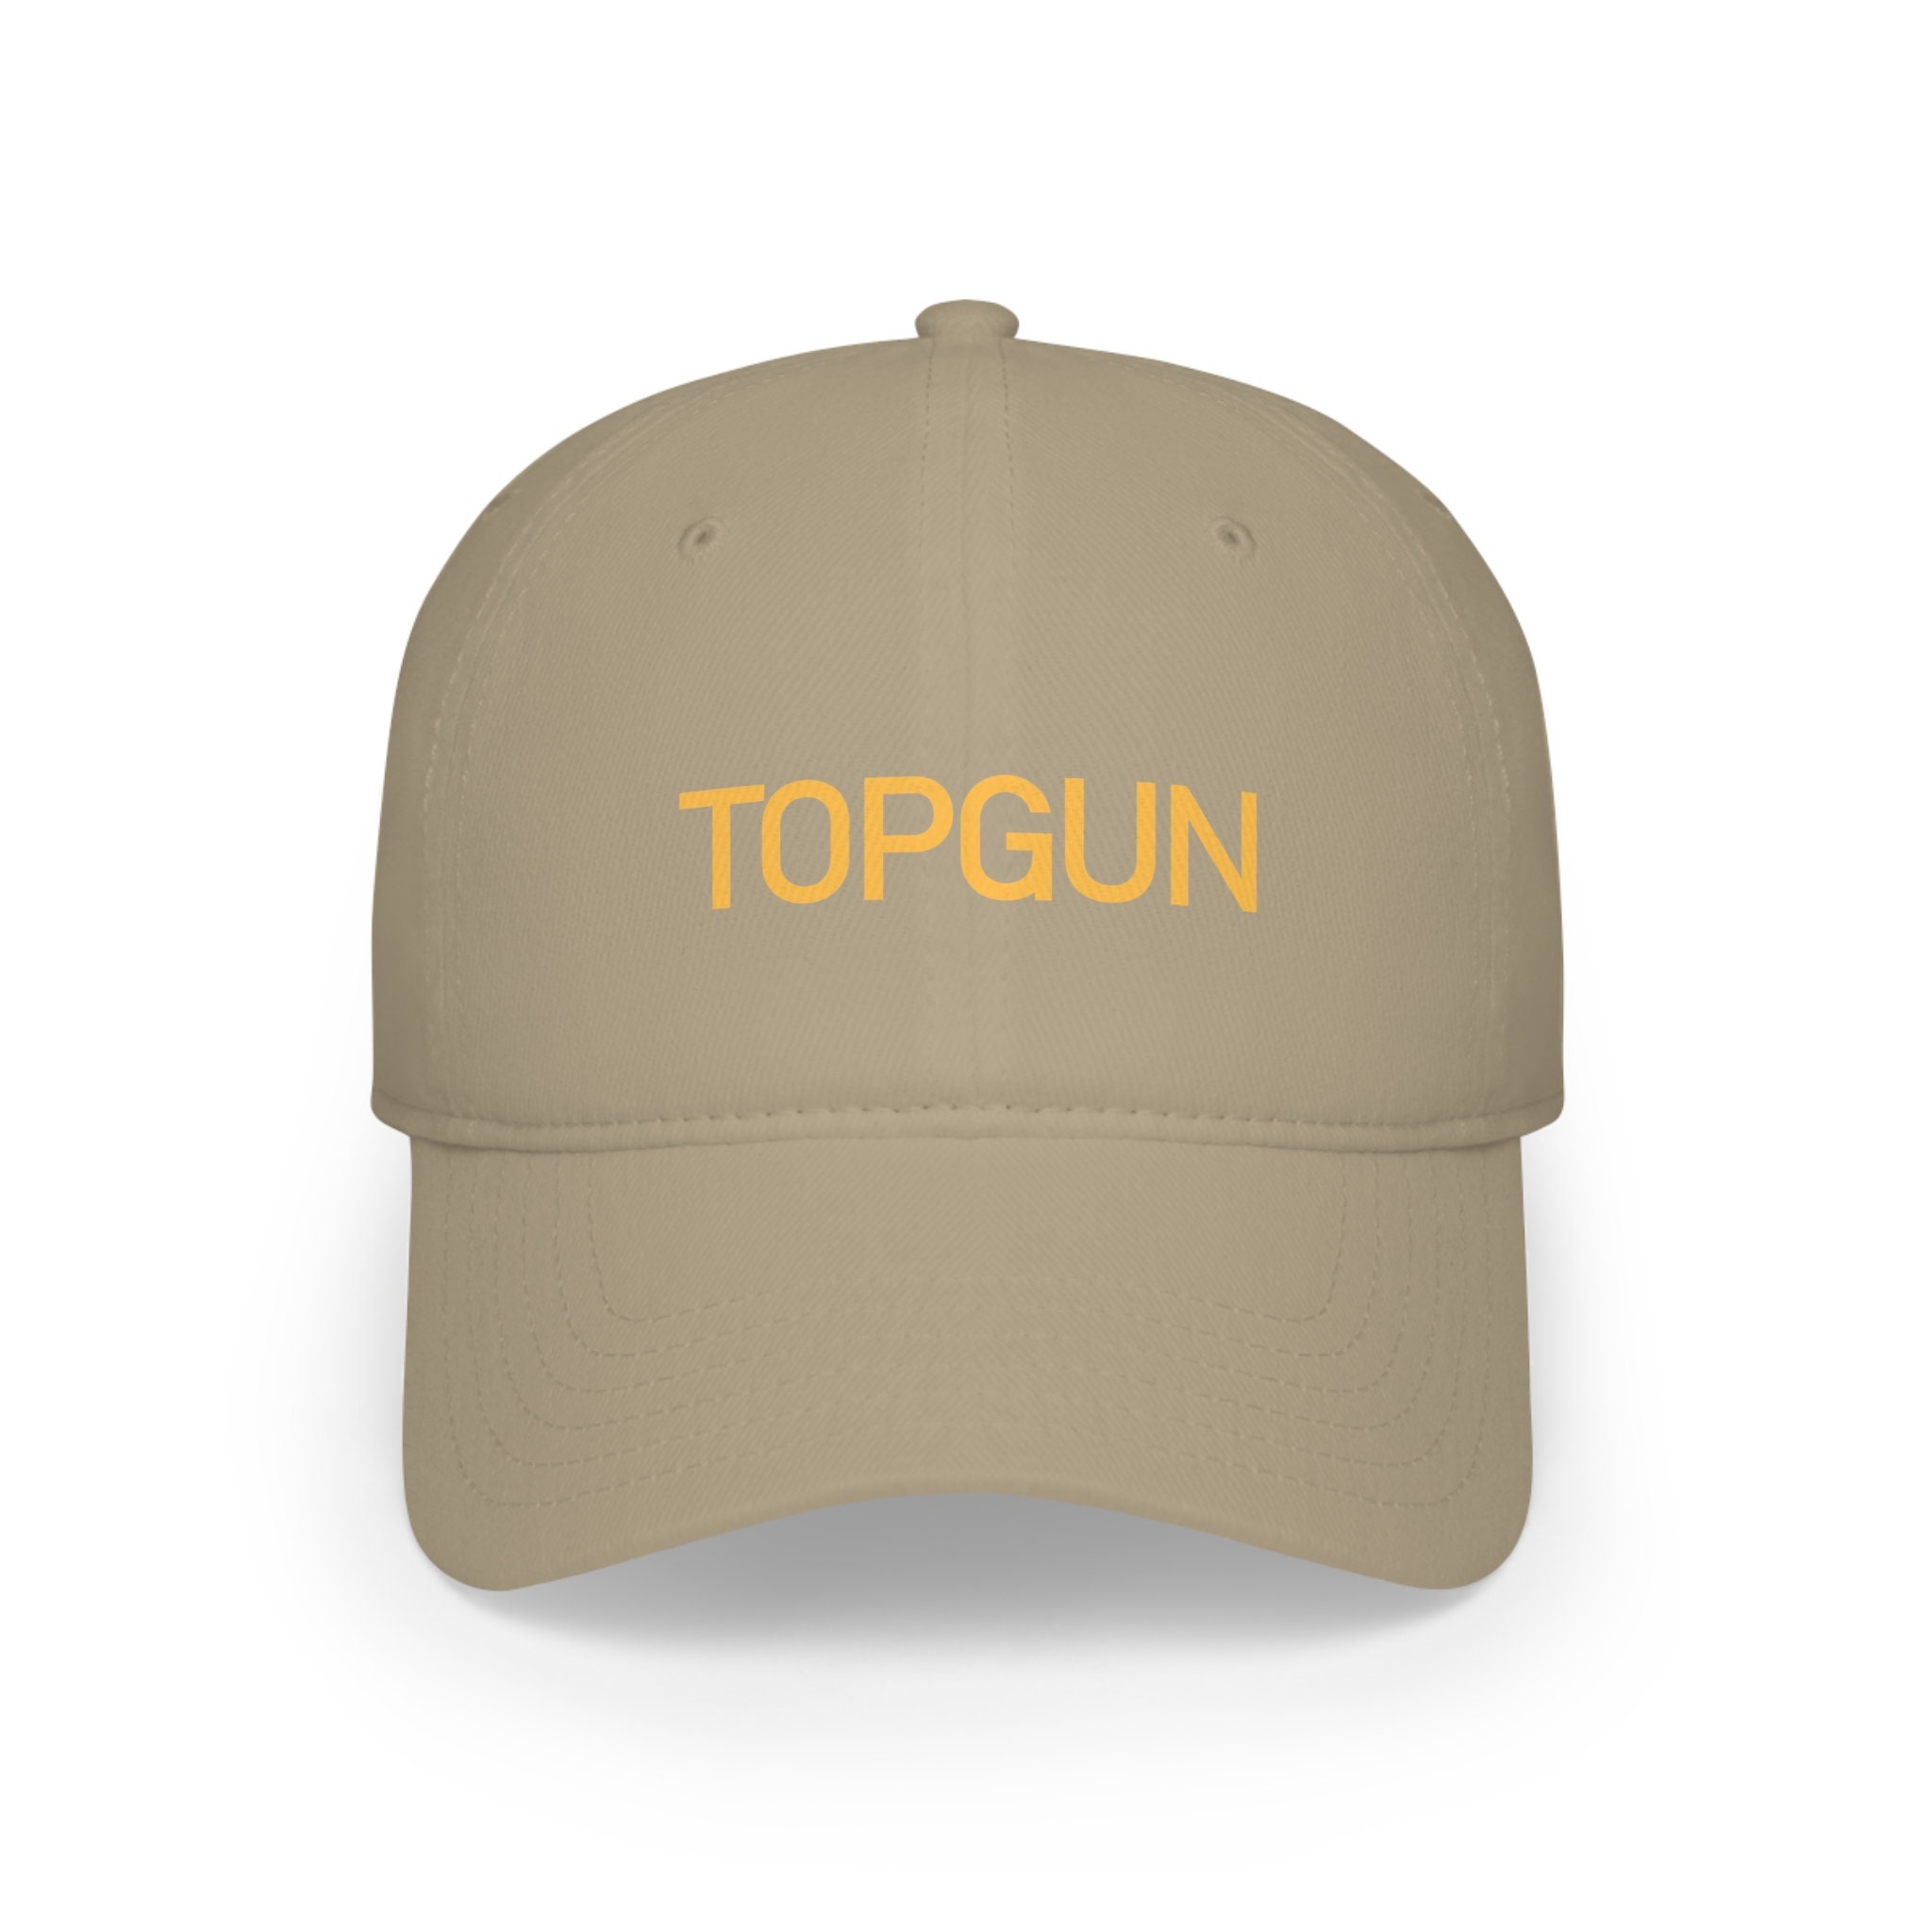 Topgun - Cap Etsy